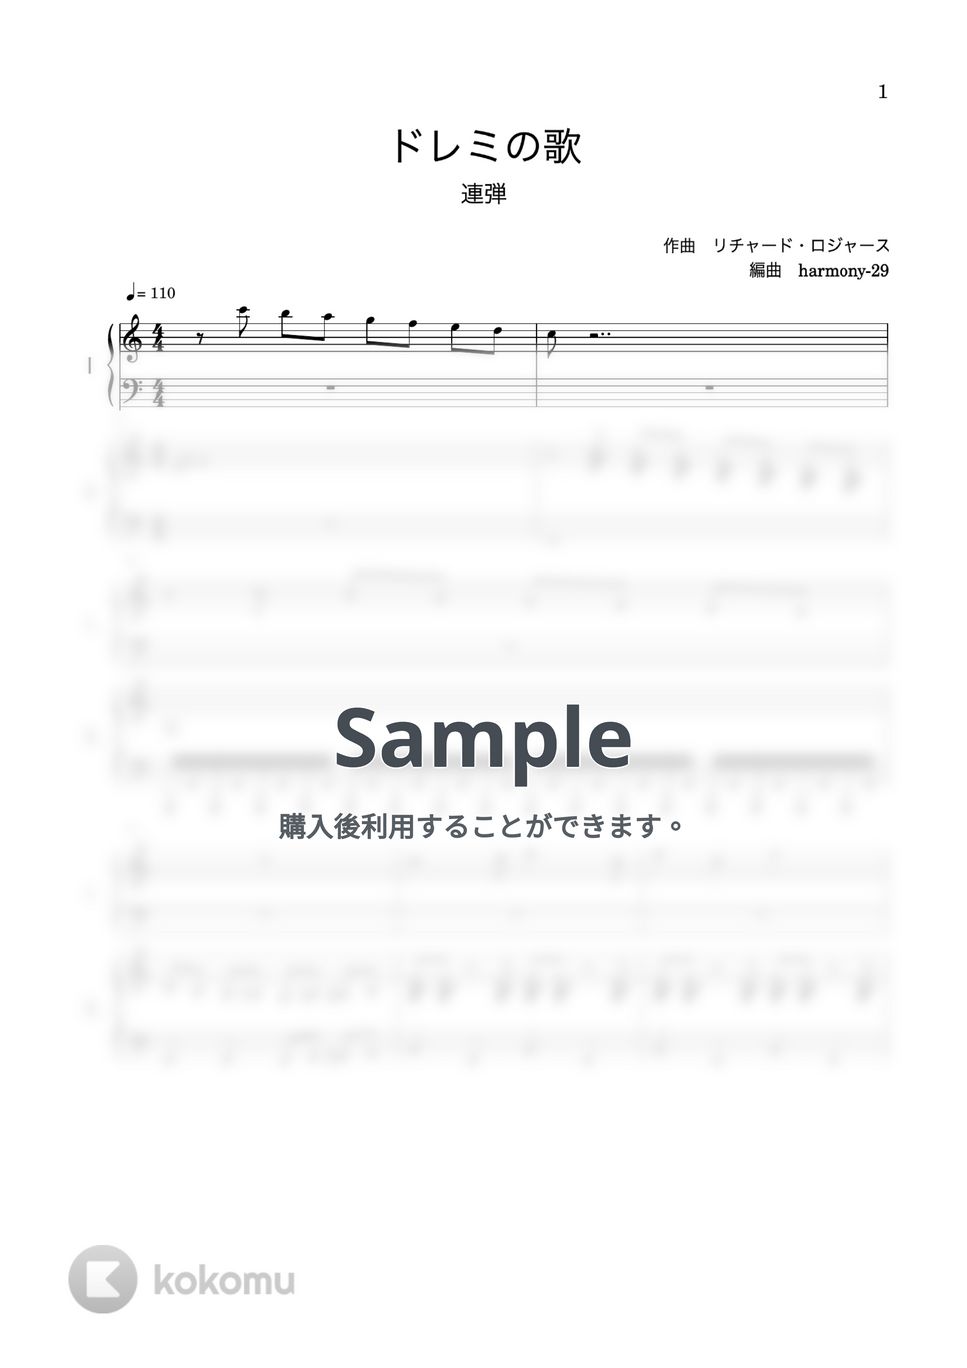 リチャード・ロジャース - ドレミの歌 (ピアノ連弾) by harmony-29